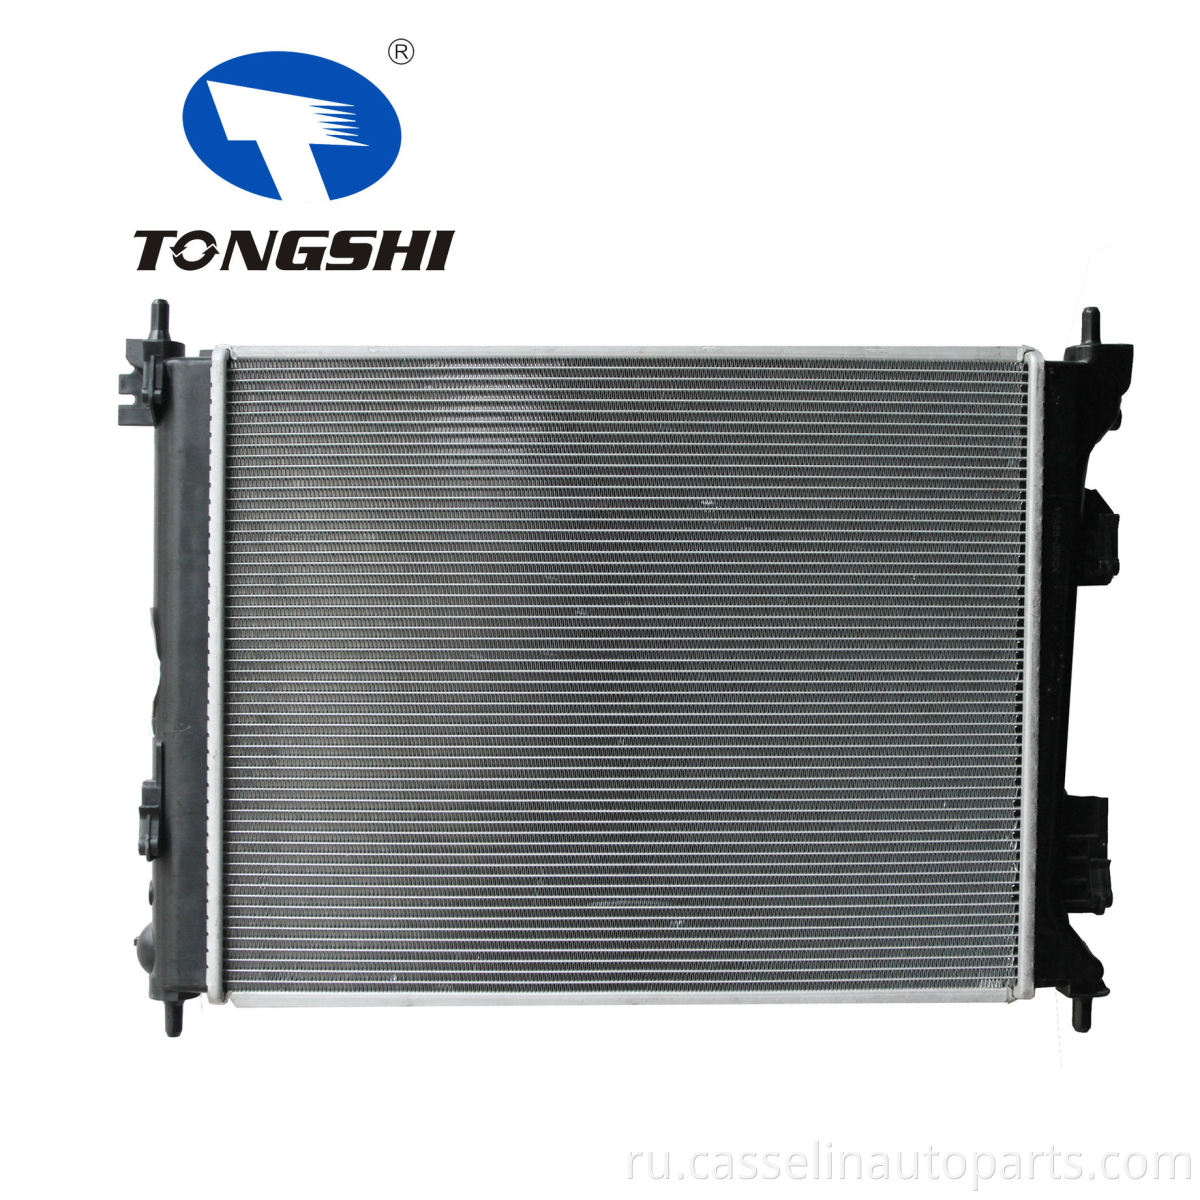 Высококачественные автофекции автомобиль алюминиевый радиатор для Nissan Terrano 3.0d 02 MT OEM 21410-2x900